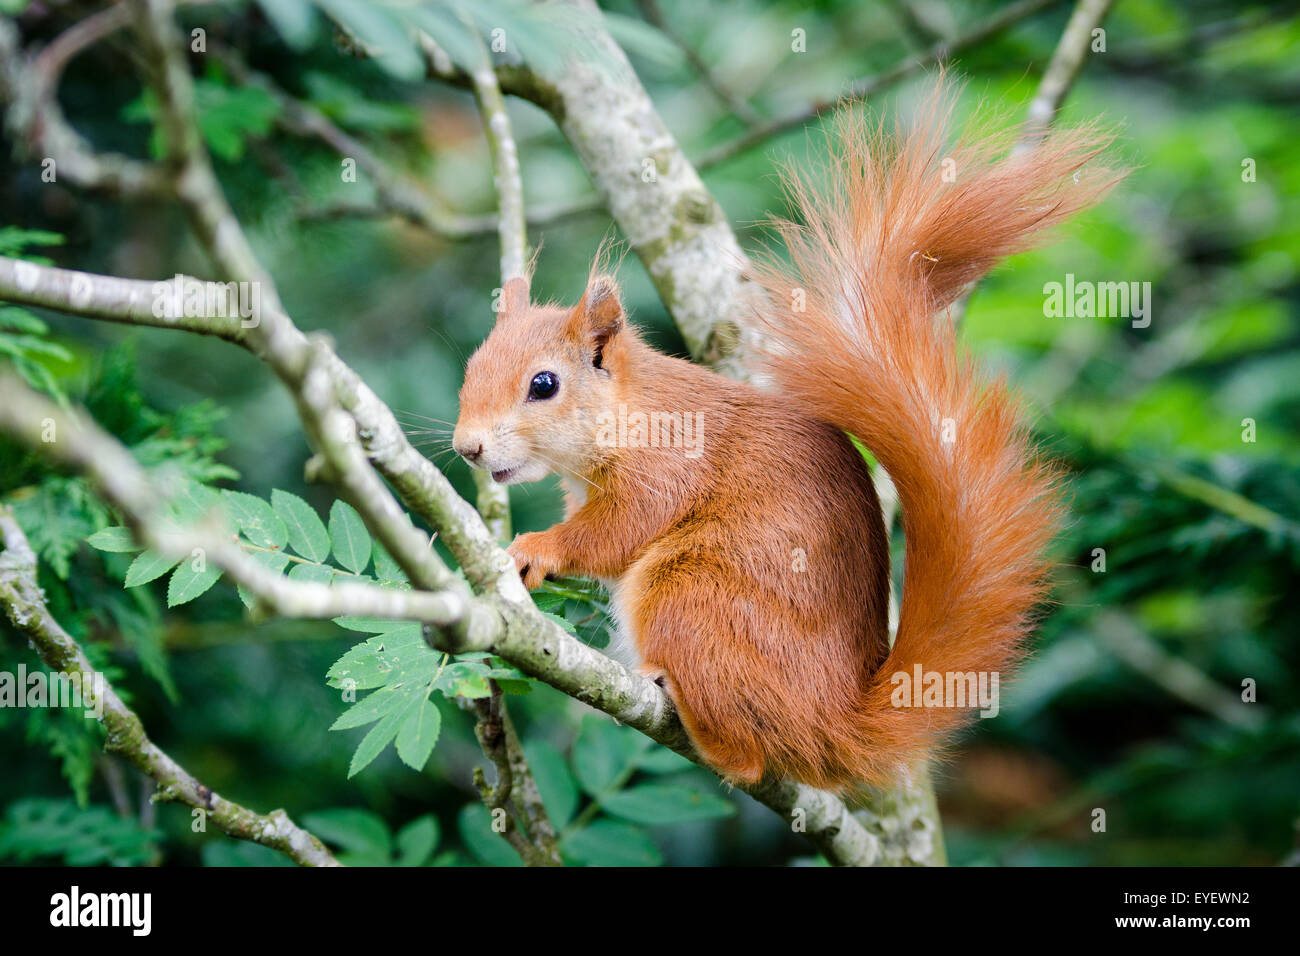 Red squirrel (Sciurus vulgaris) sitting in tree Stock Photo